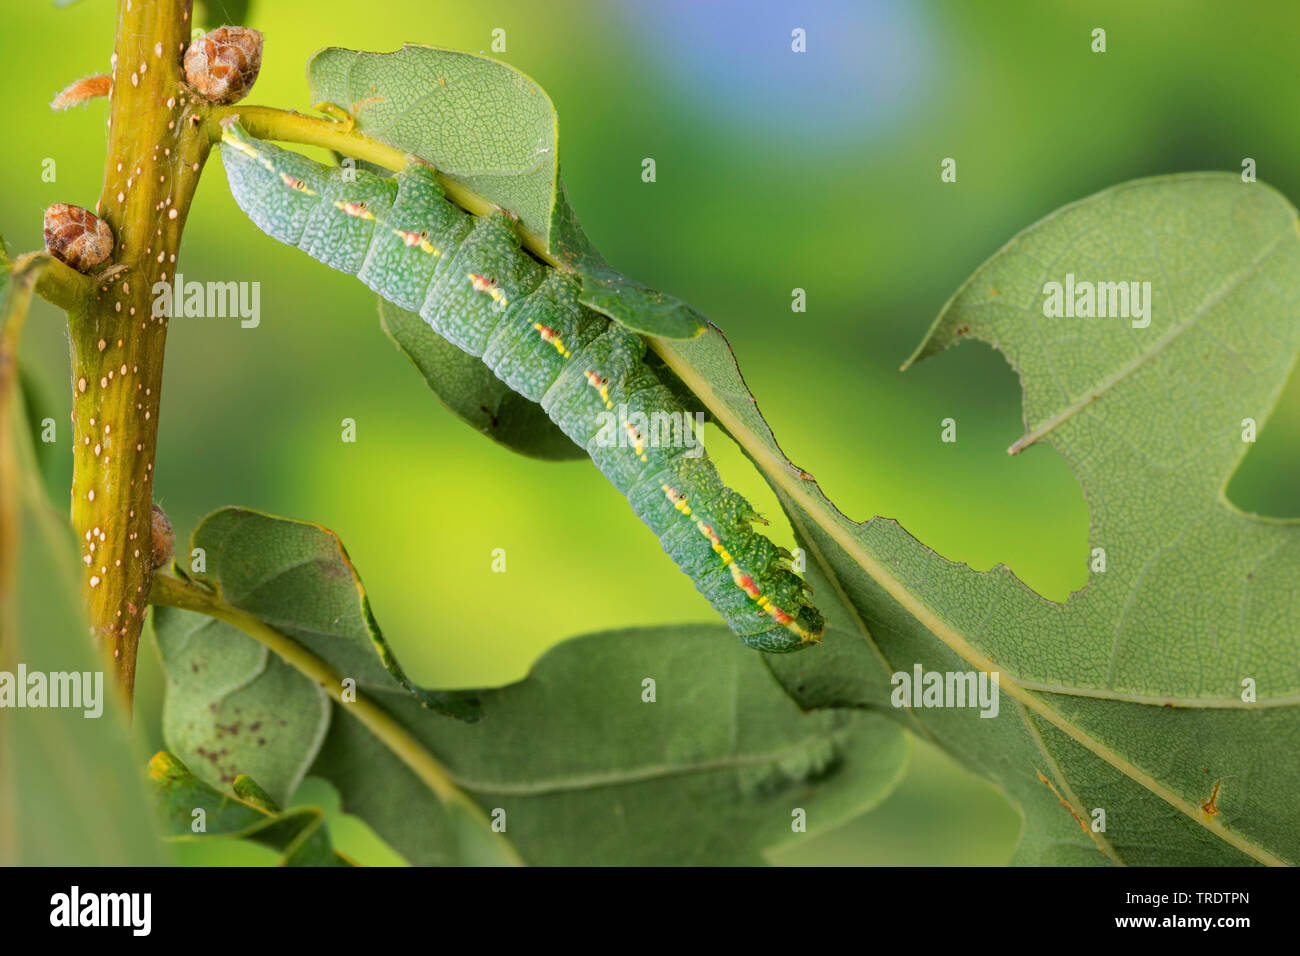 Eiche braun marmoriert (Drymonia querna), Caterpillar Fütterung auf ein eichenblatt, Deutschland Stockfoto